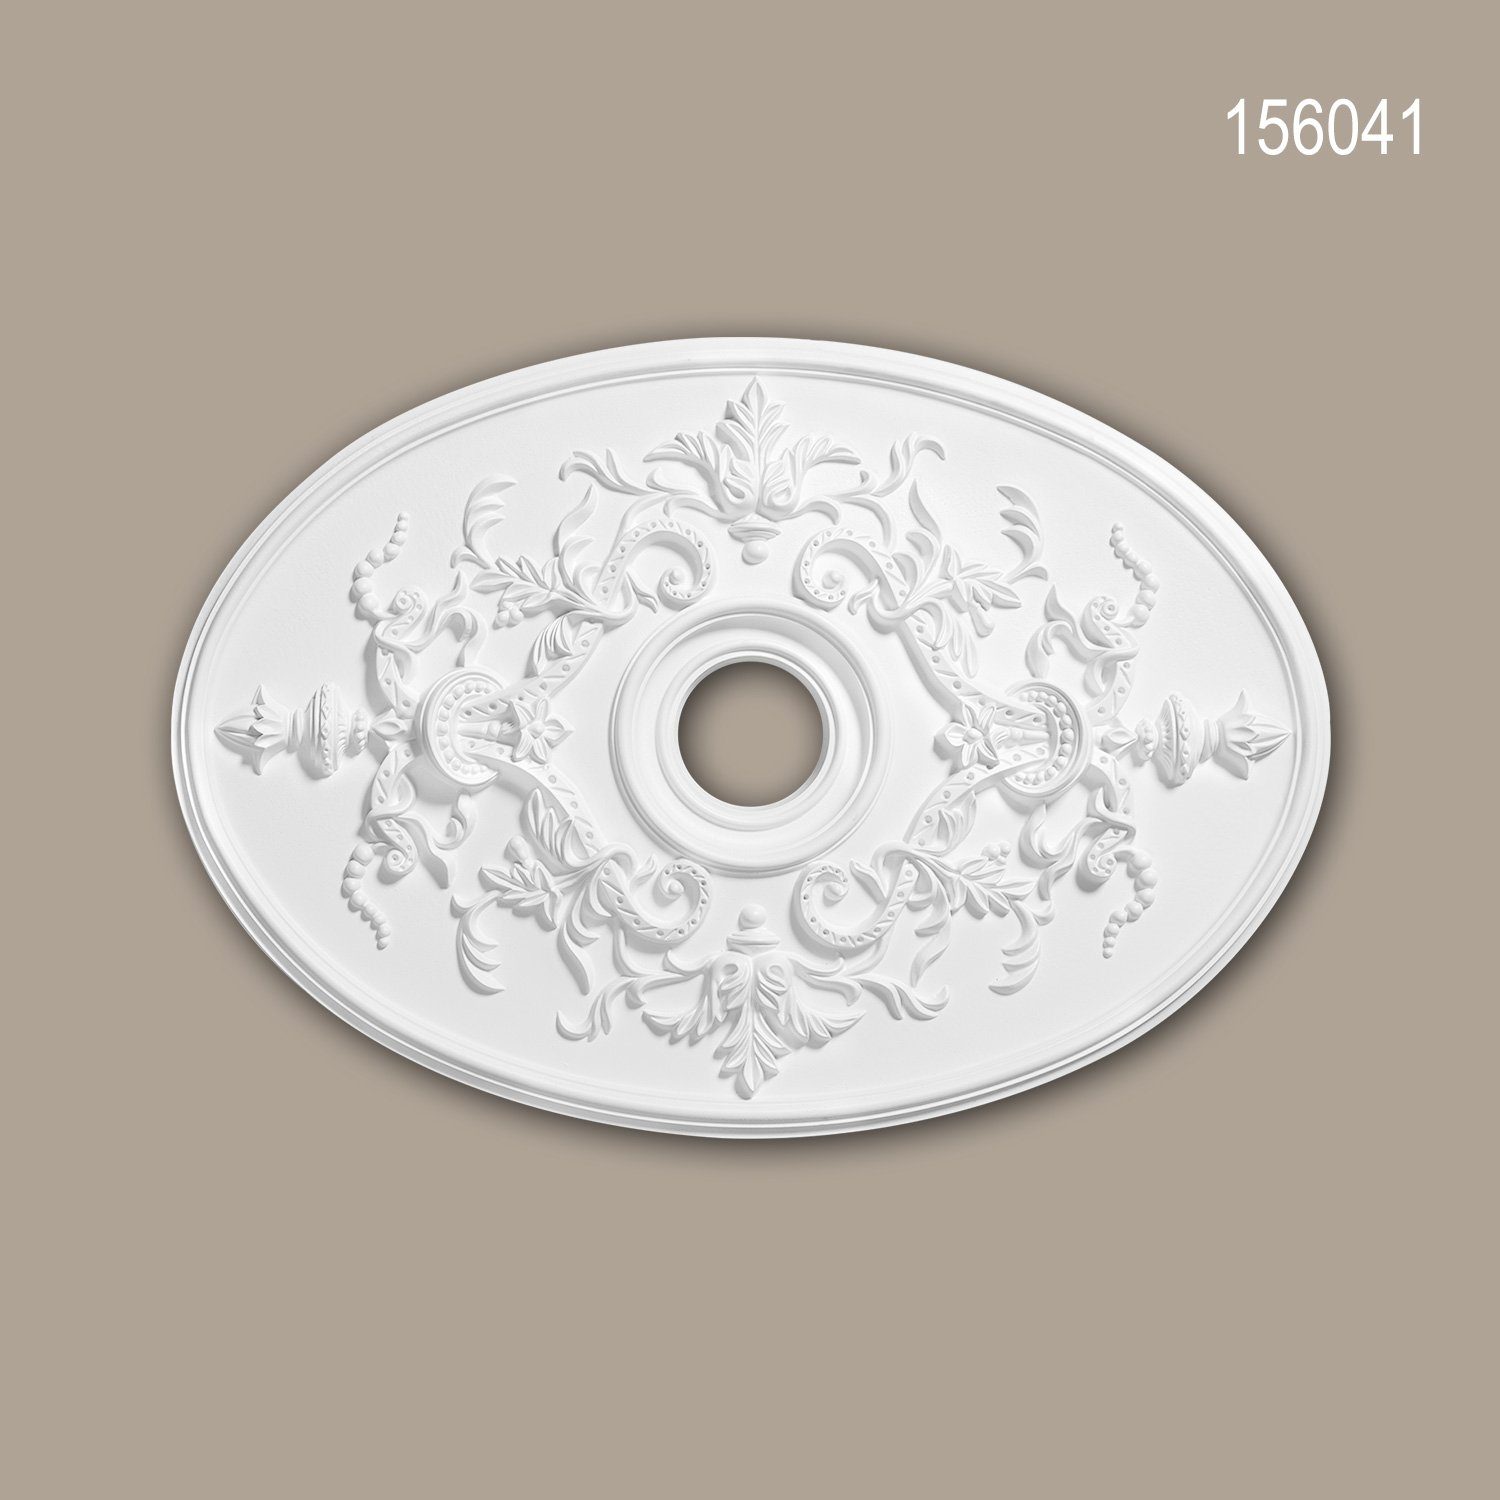 Decken-Rosette 156041 78,5 cm), vorgrundiert, Deckenelement, Deckenrosette, x Medallion, (Rosette, St., Profhome weiß, 1 Stuckrosette, 54,4 Neo-Empire Stil: Zierelement,